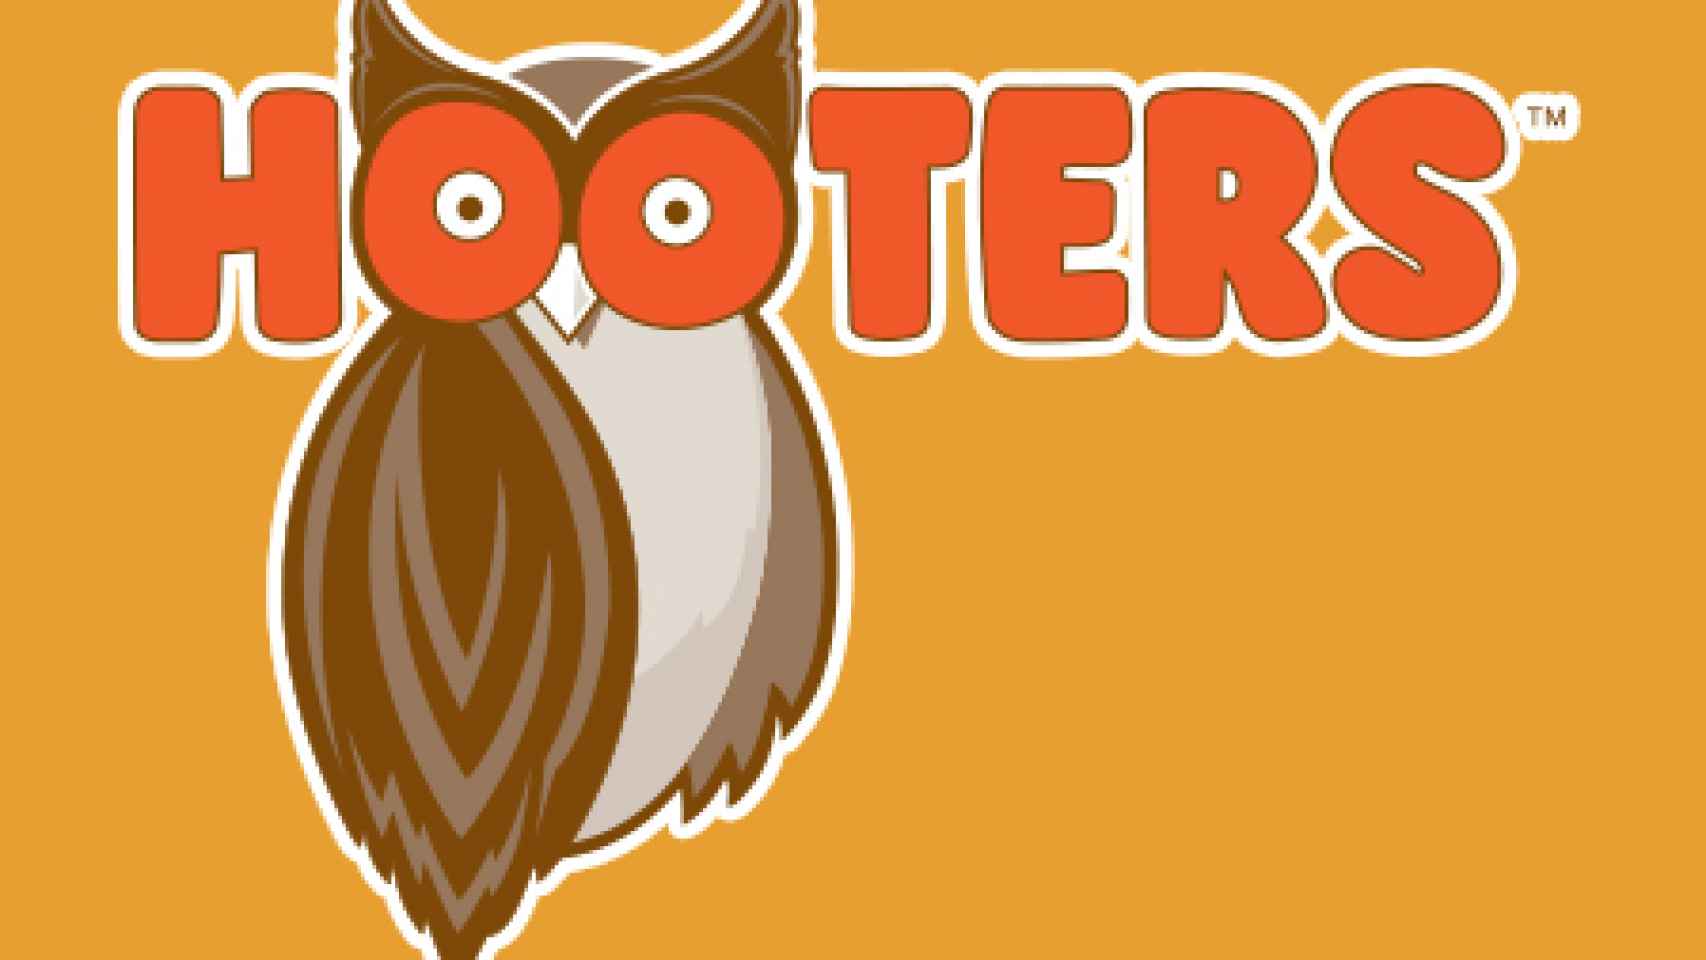 El logo de Hooters es un búho cuyos ojos imitan dos pezones